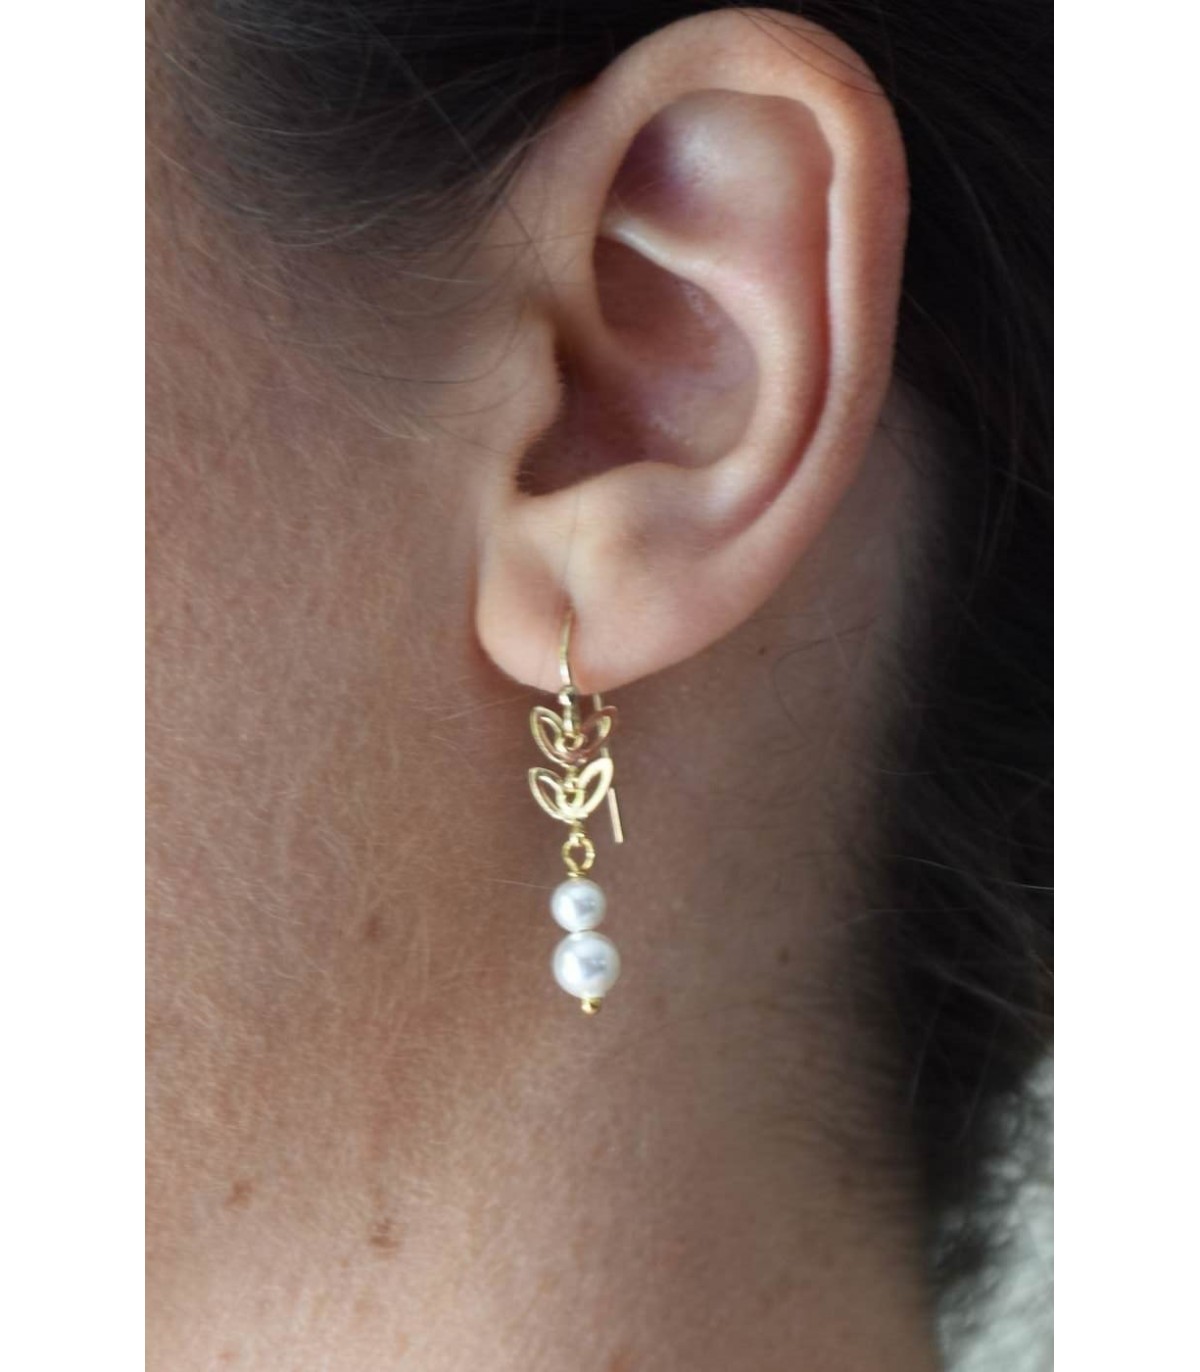 Boucles d'oreilles Napoli avec épis de blés dorés et perles blanches style boho chic ou encore champetre